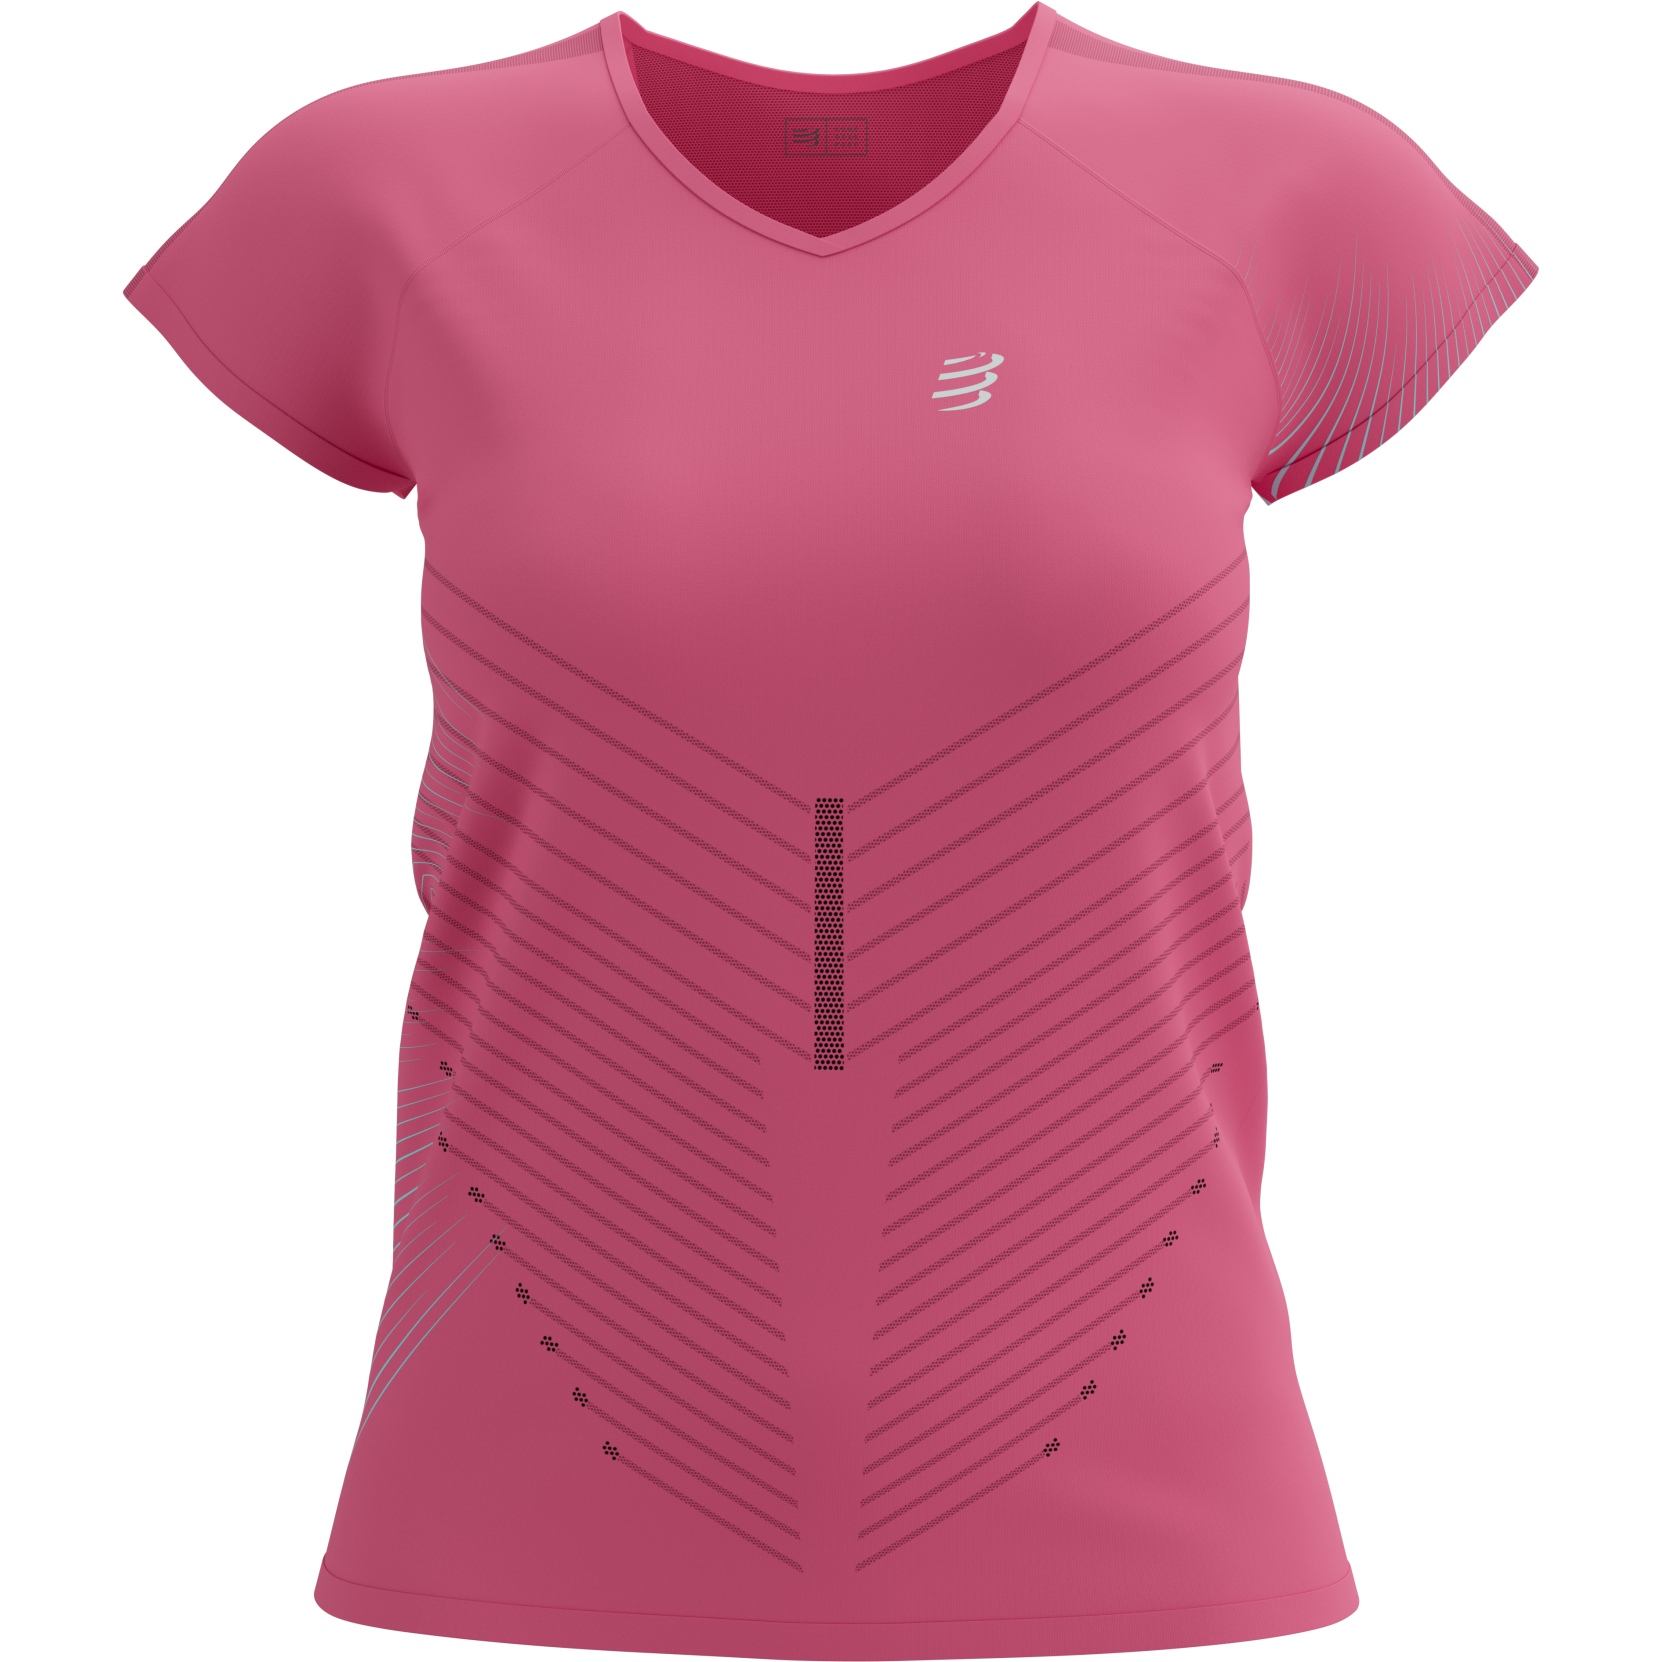 Productfoto van Compressport Performance T-Shirt Dames - hot pink/aqua